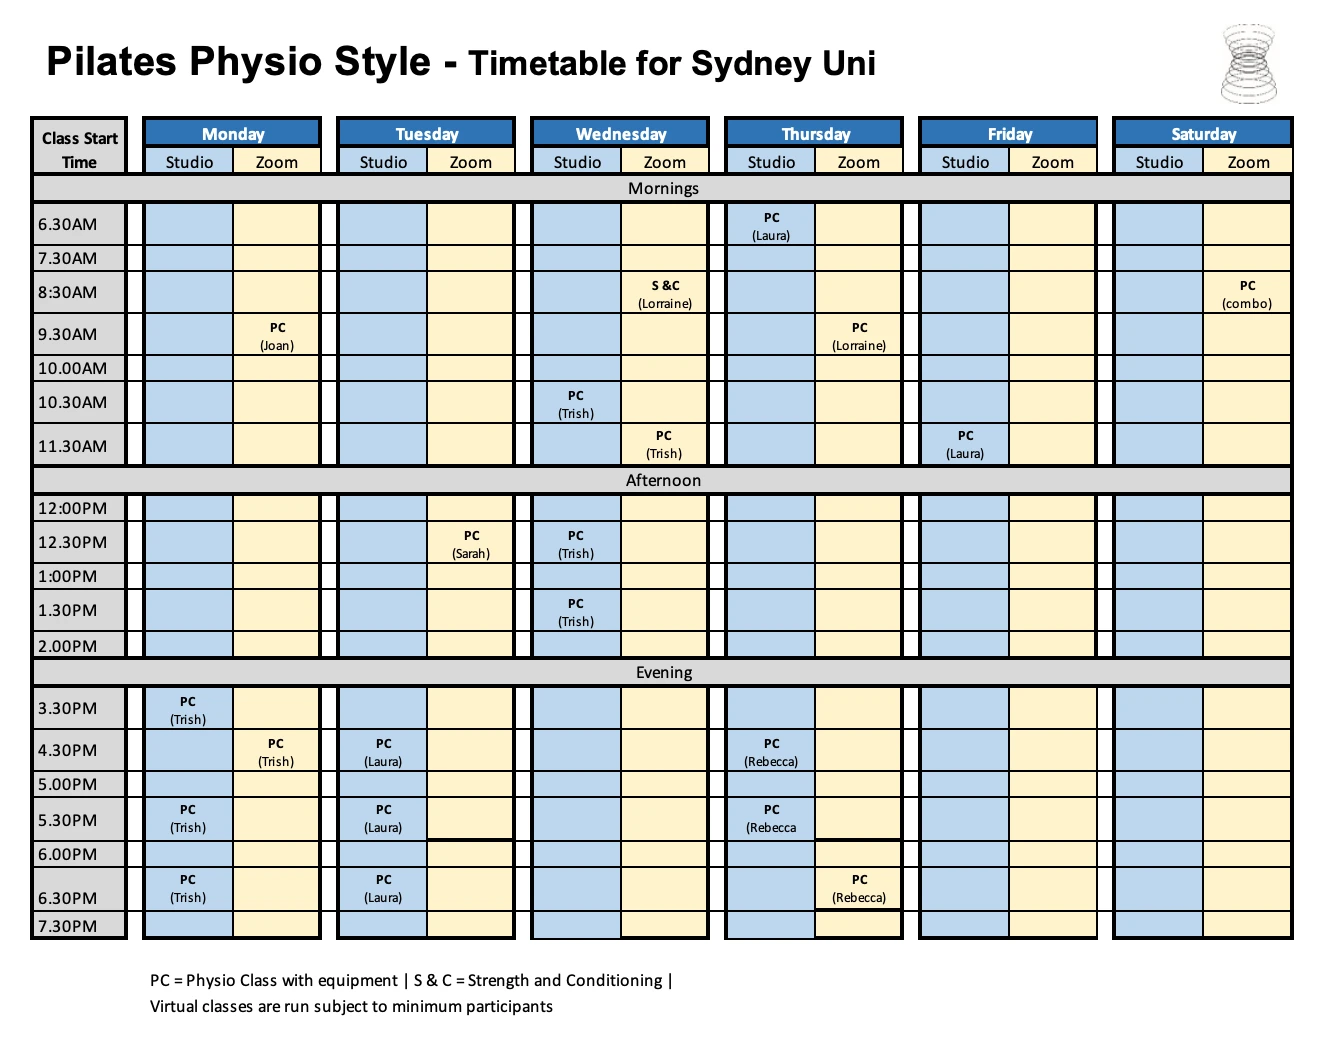 Pilates Physio Style Sydney Uni timetable